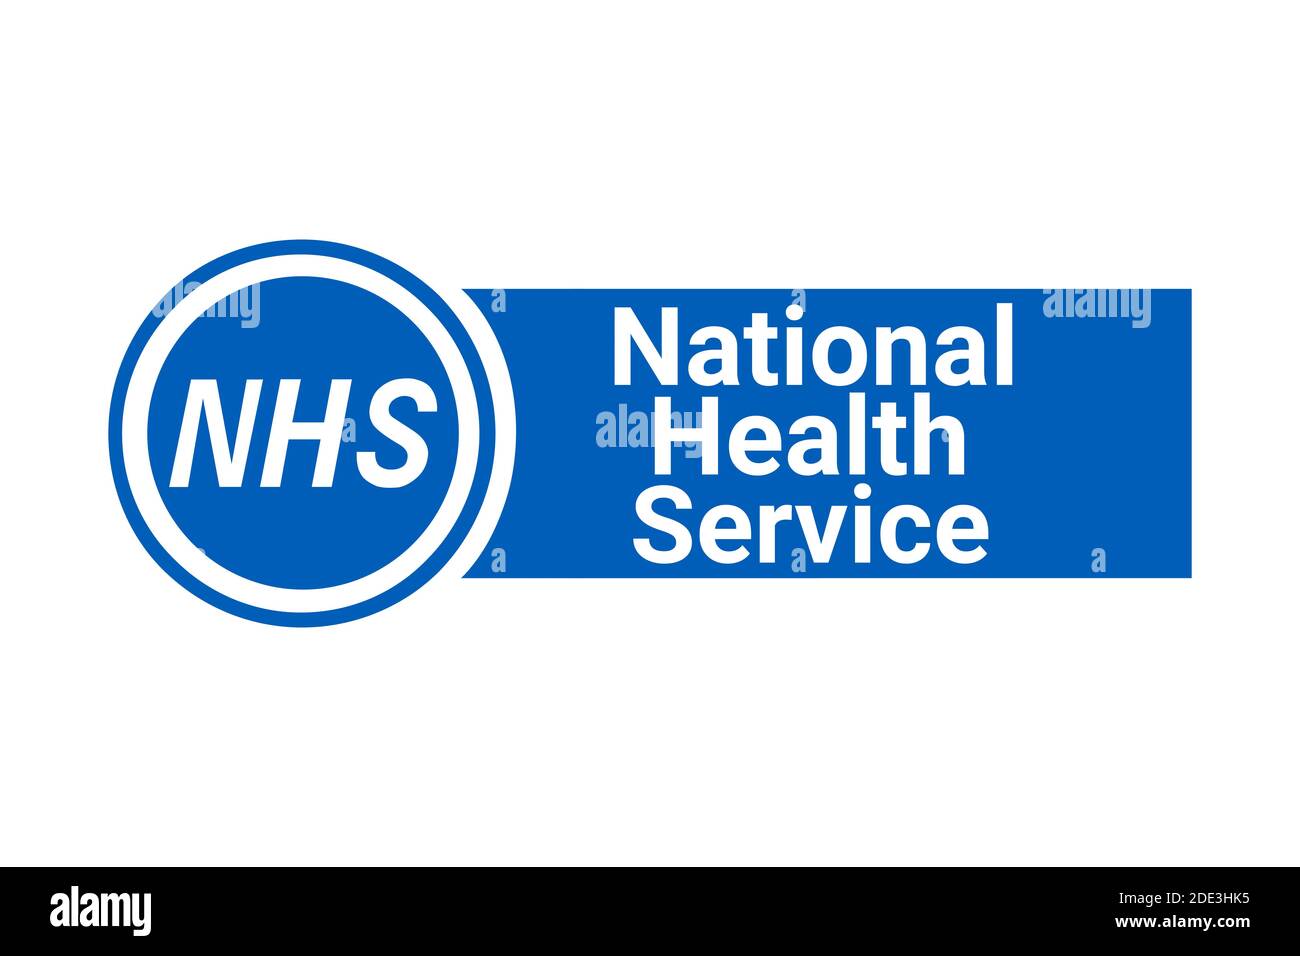 NHS, signe du service de santé national Banque D'Images